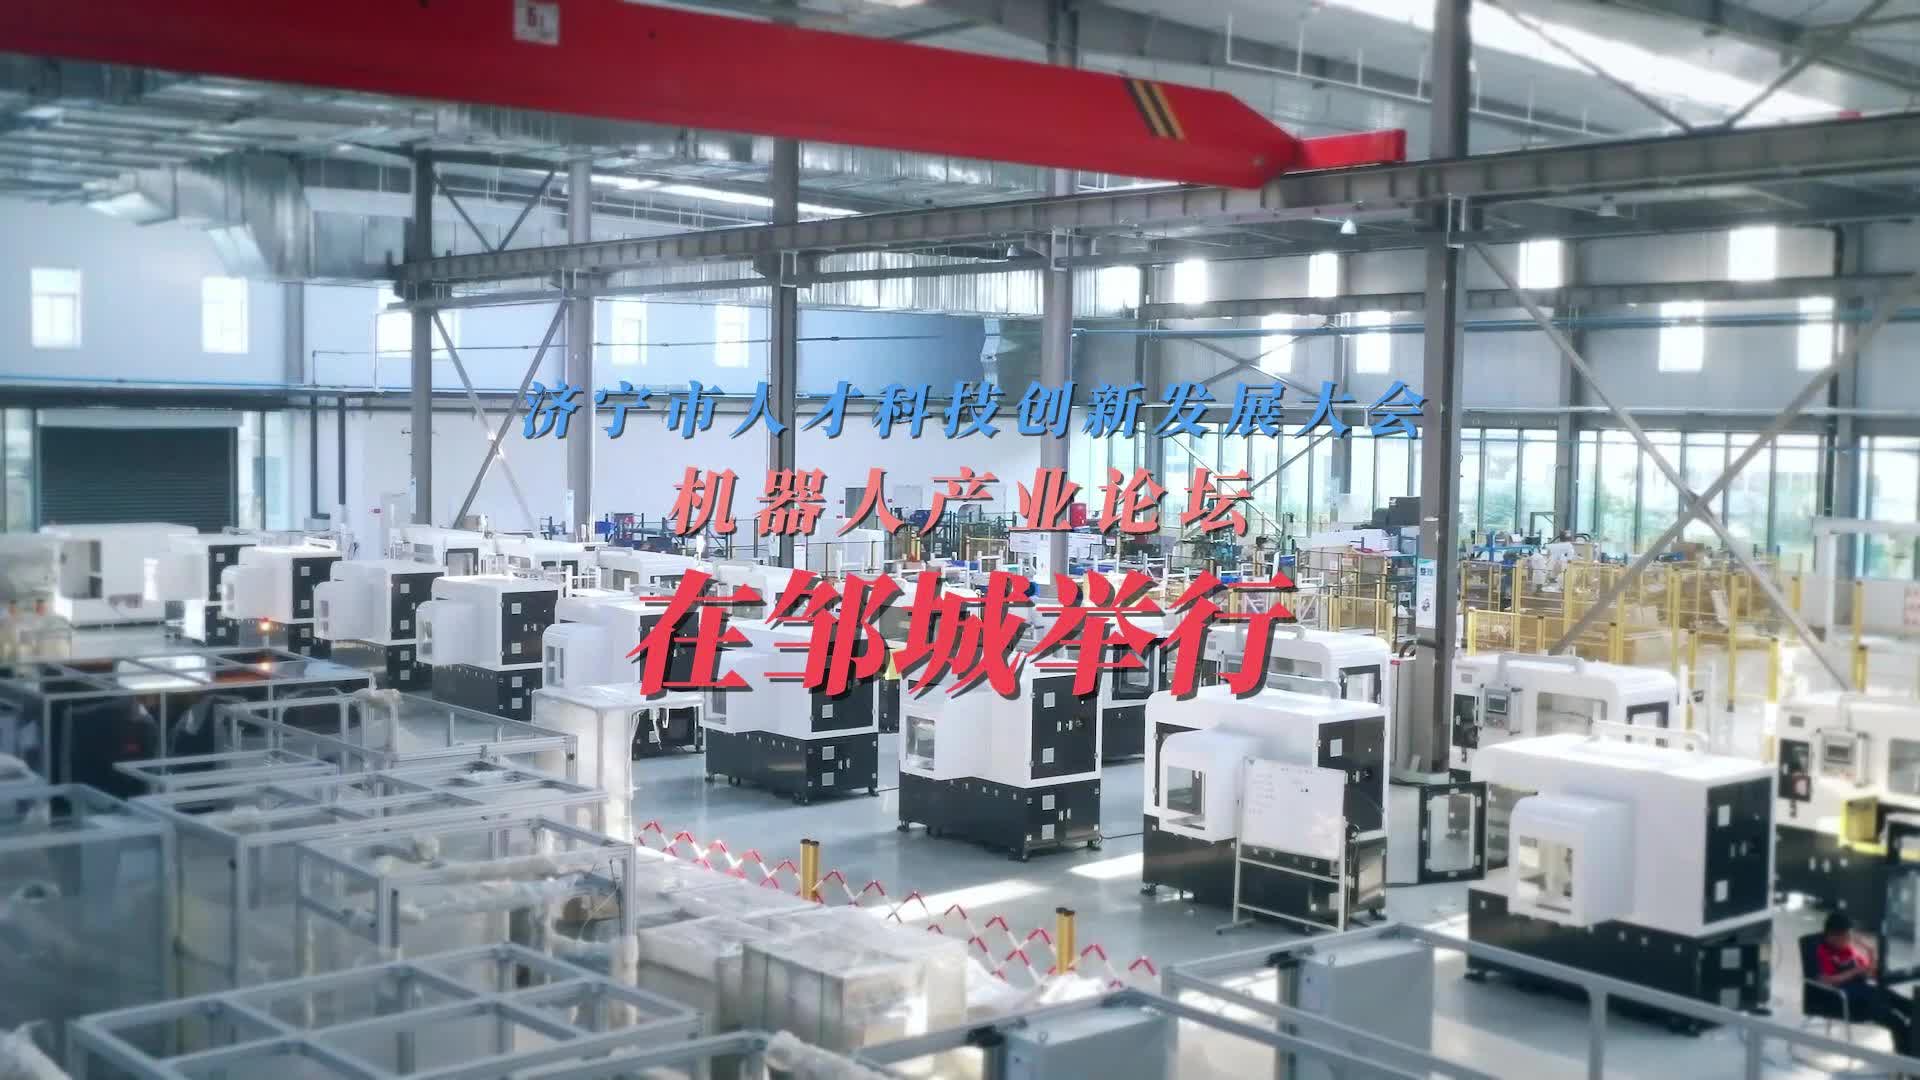 【邹视频·新闻】46秒|济宁市人才科技创新发展大会机器人产业论坛在邹城举行